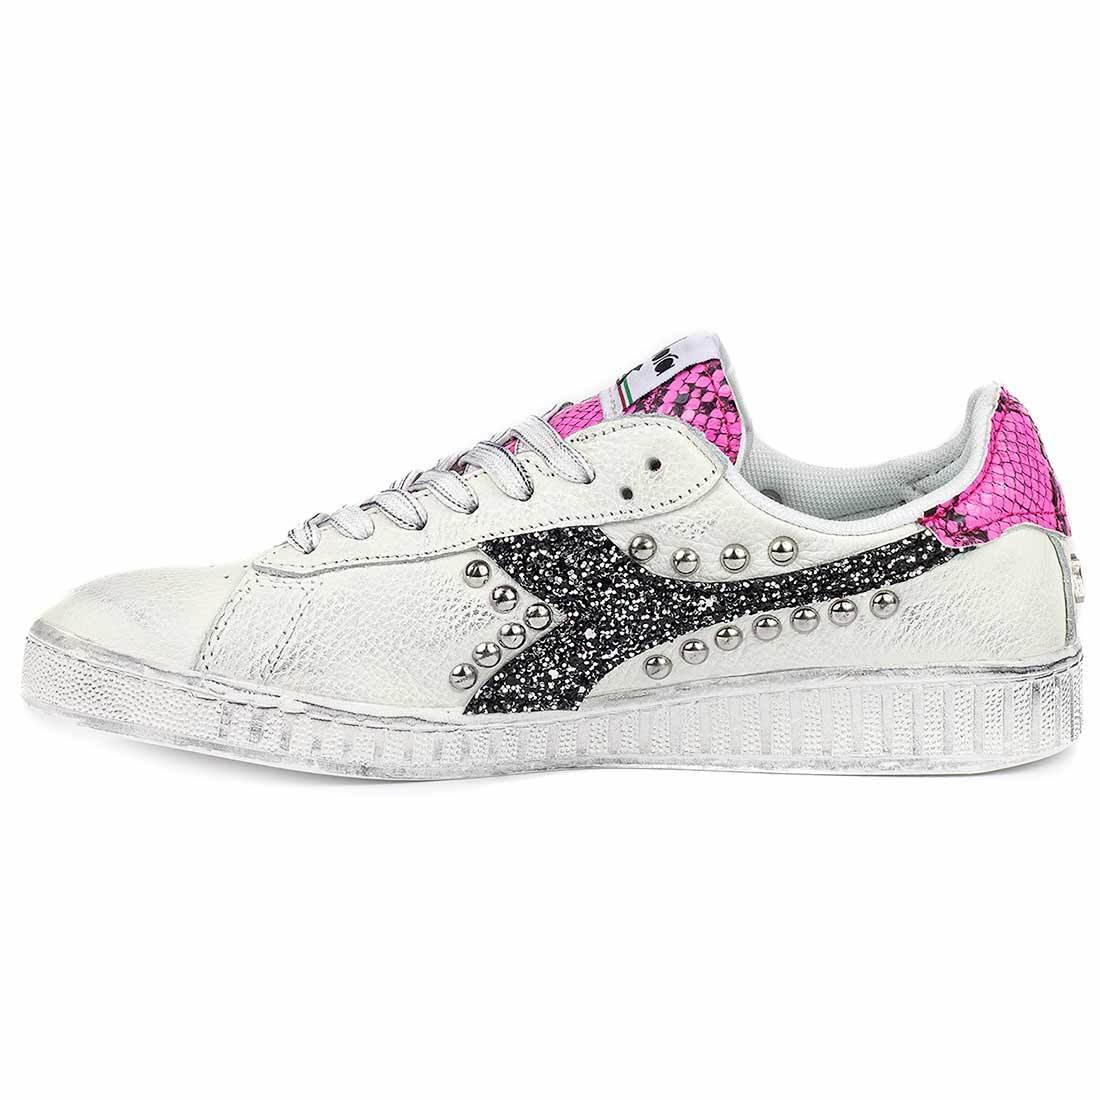 Sneakers Diadora heritage con pitone color rosa fluo con glitter nero e con borchie